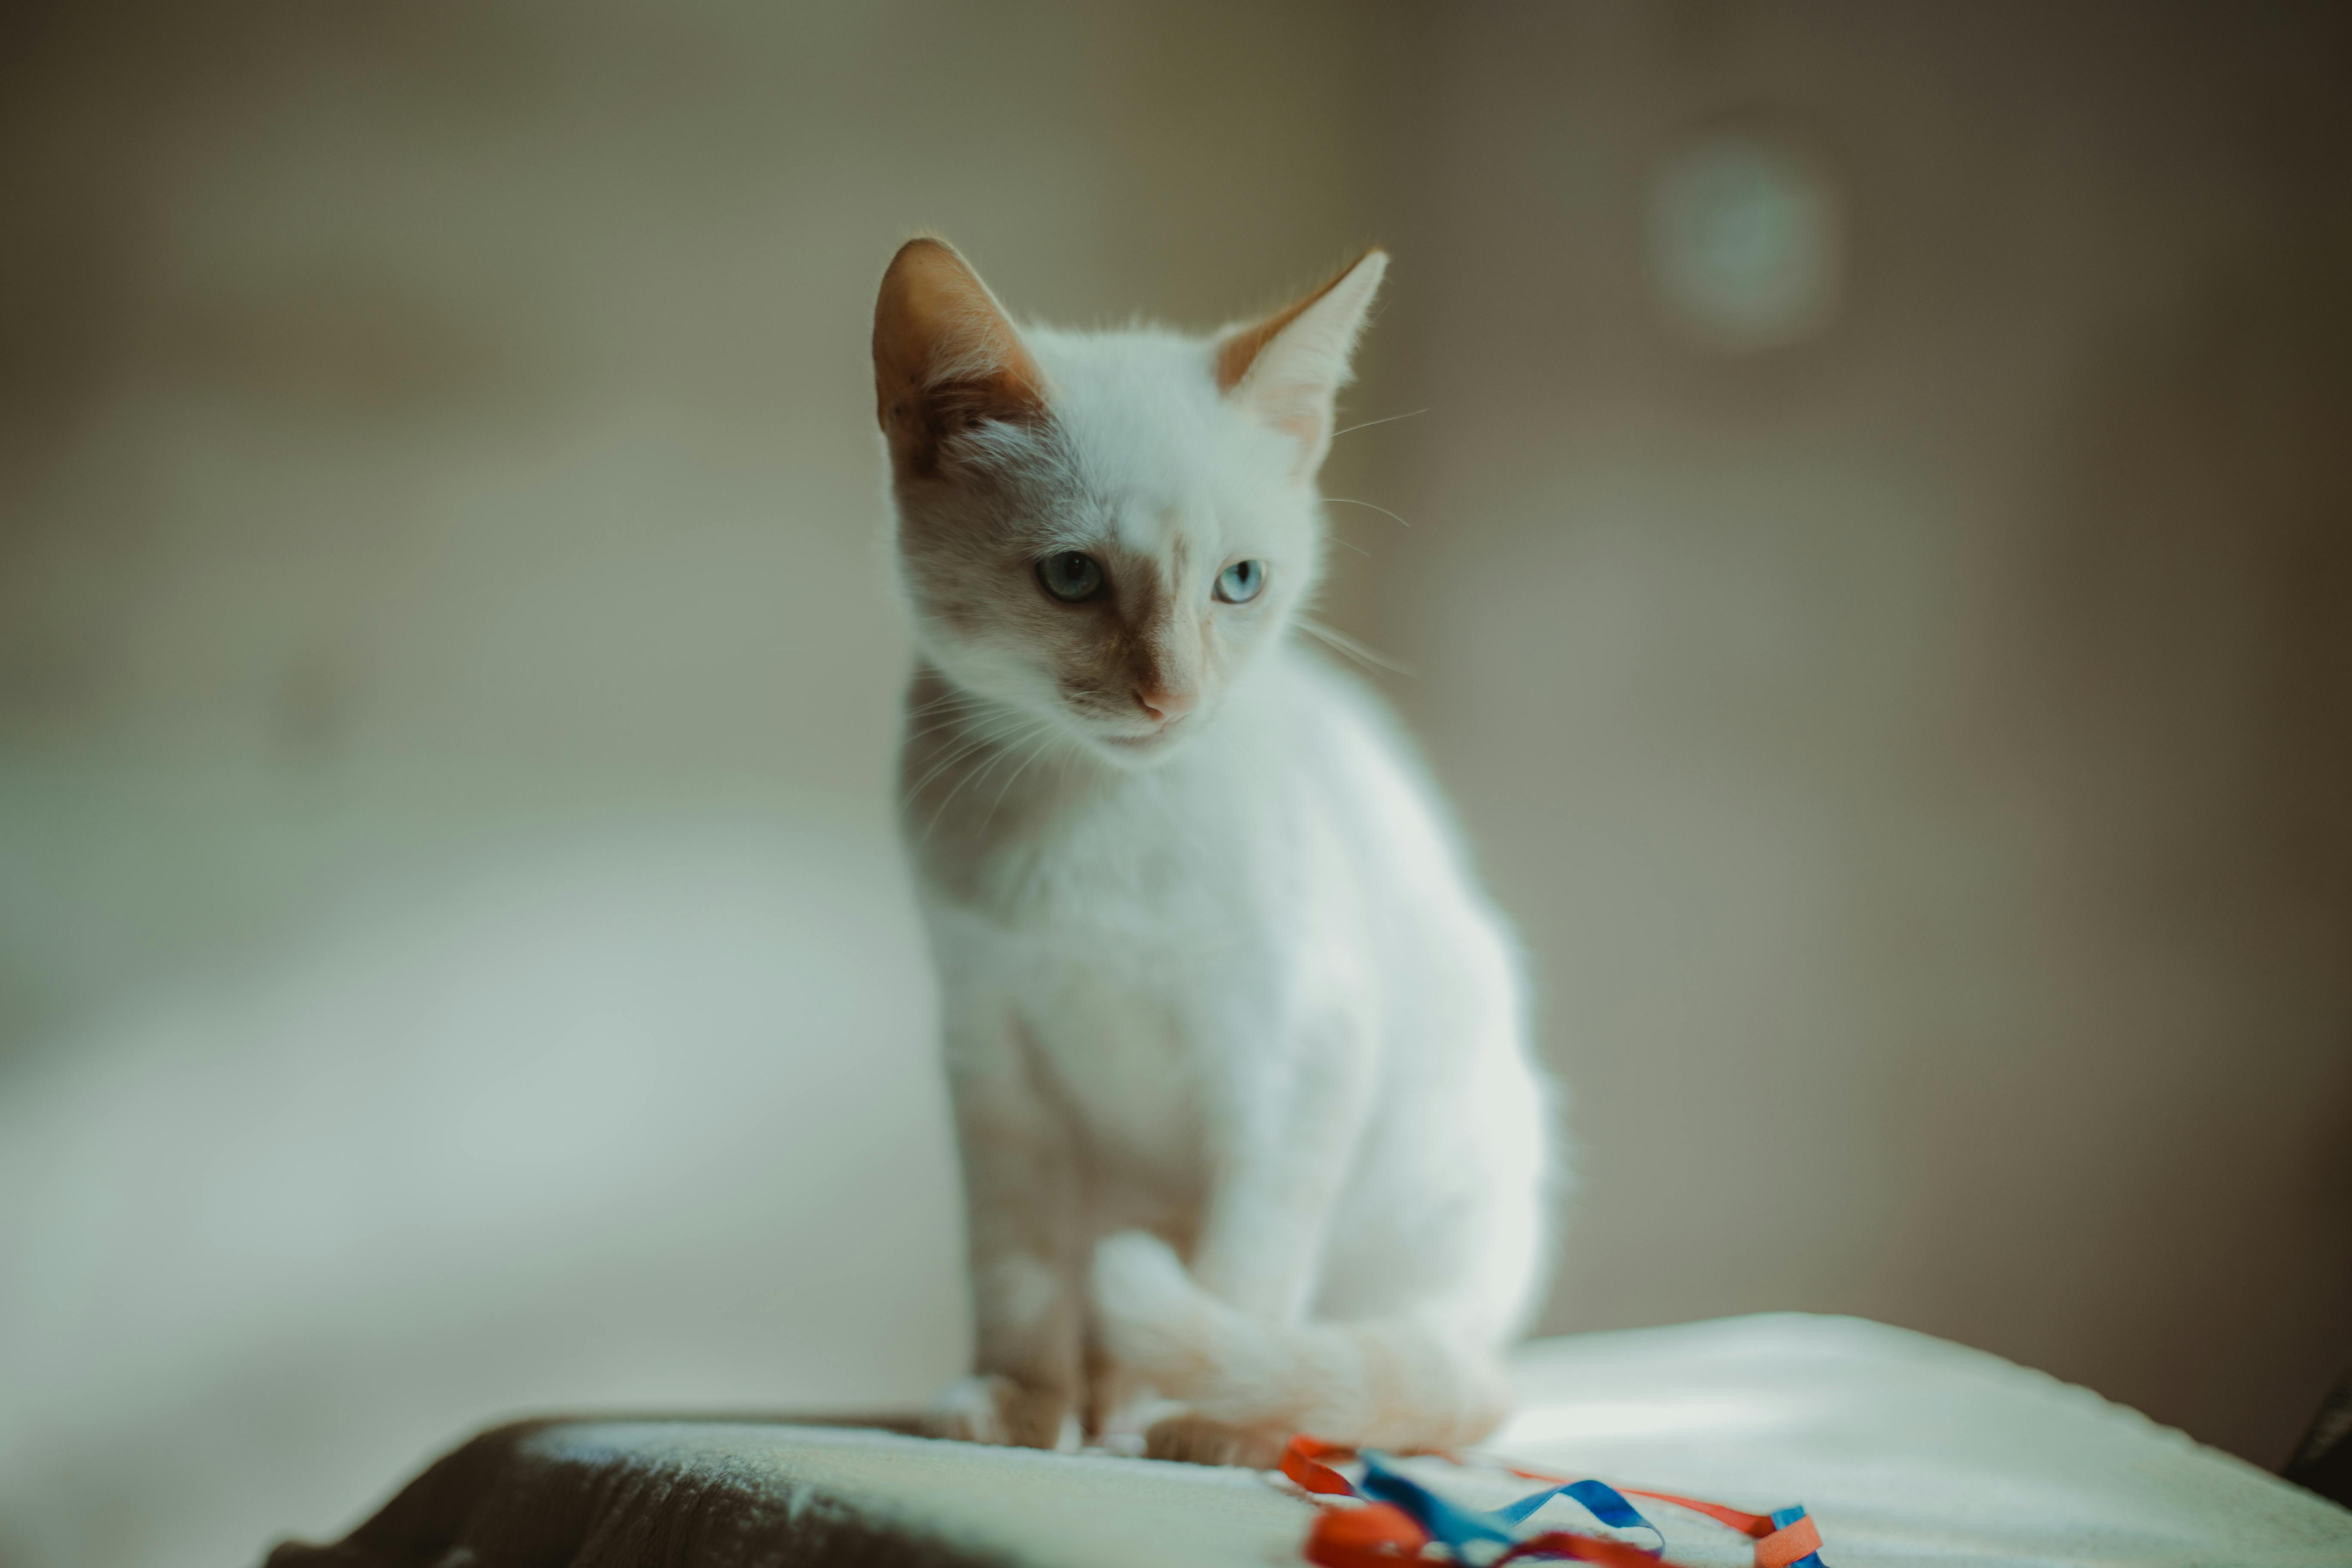 Những bức ảnh chụp chân dung của những chú mèo xinh đẹp, sở hữu đôi mắt xanh ngọc đẹp như ngọc trai. Tất cả những gì bạn cần làm là tải hình ảnh miễn phí này và cảm nhận tất cả những khoảnh khắc hạnh phúc mà chú mèo đem lại.